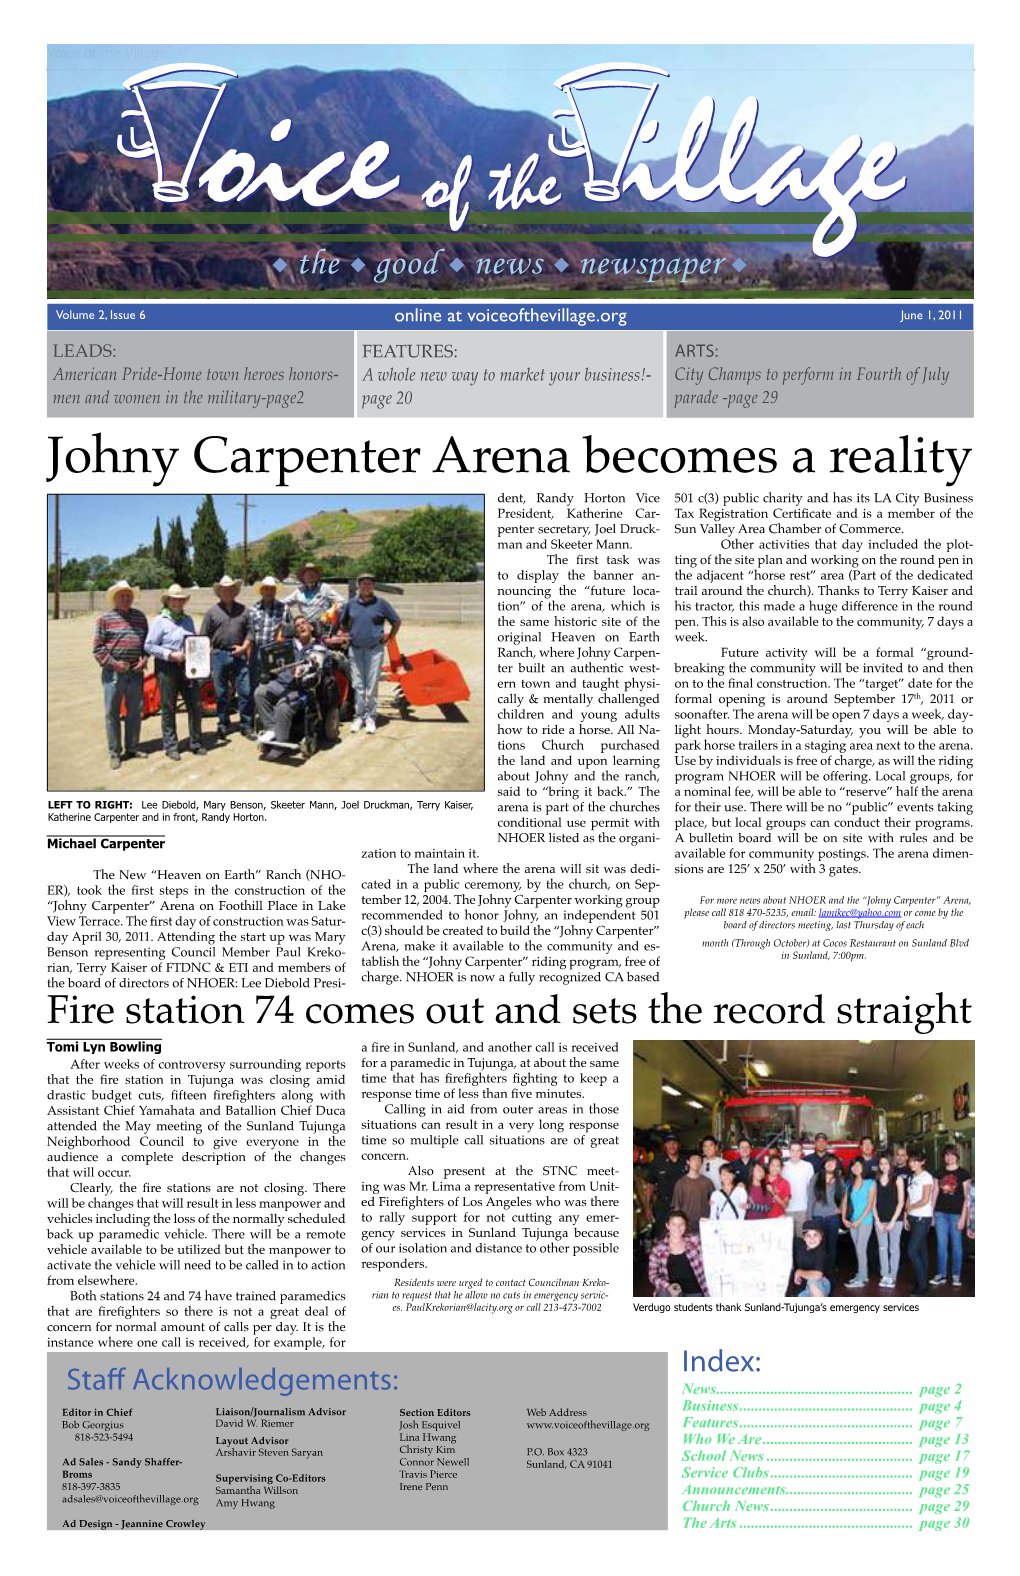 Johny Carpenter Arena Becomes a Reality